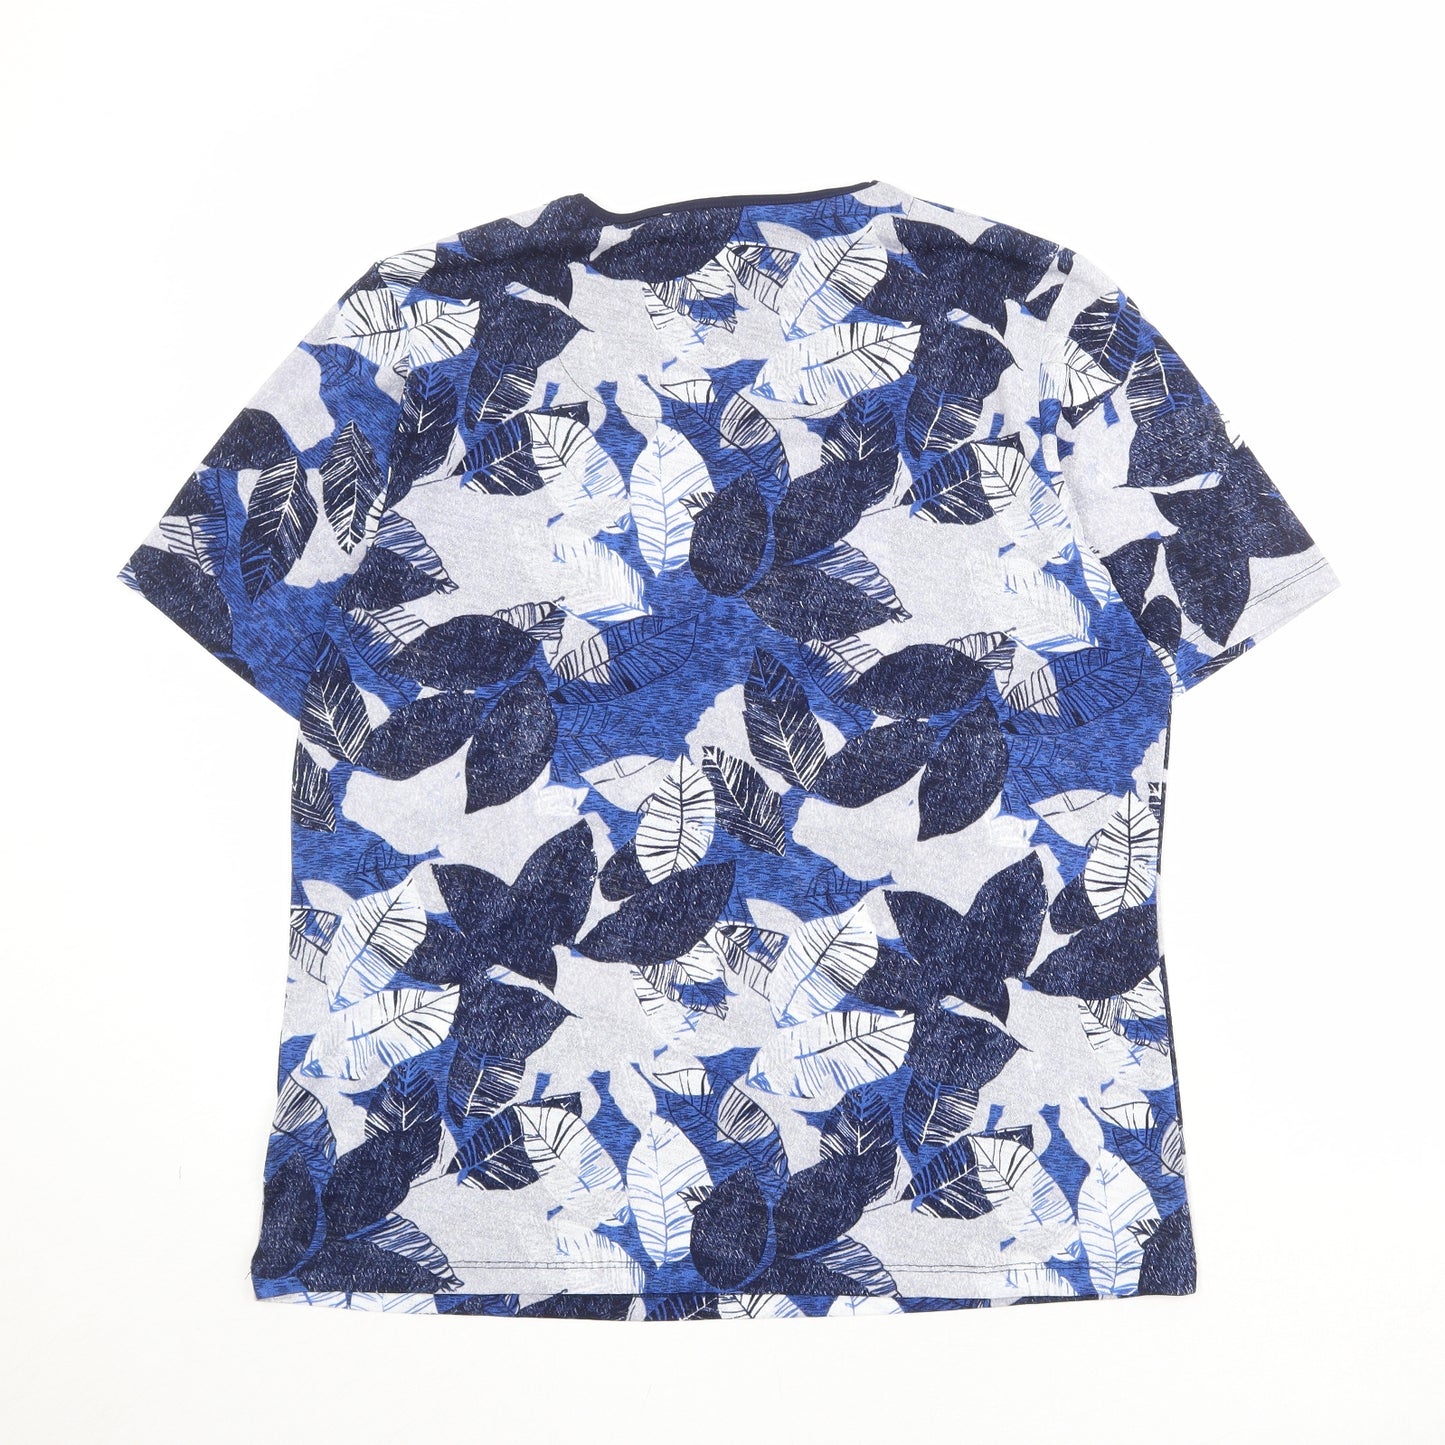 TIGI Womens Blue Geometric Polyester Basic T-Shirt Size 18 Square Neck - Leaf Print Size 18/20